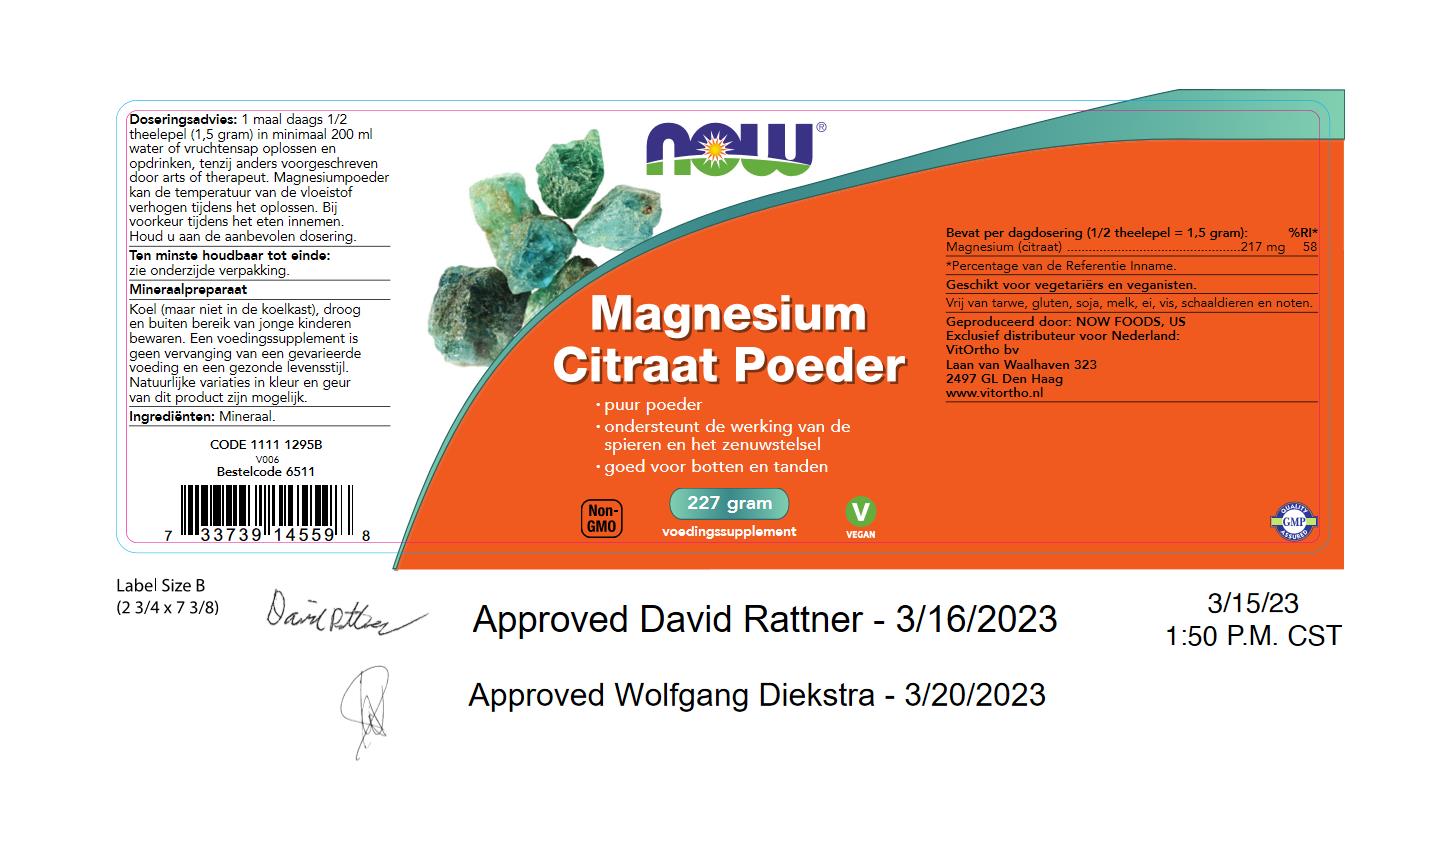 Magnesium Citraat Poeder